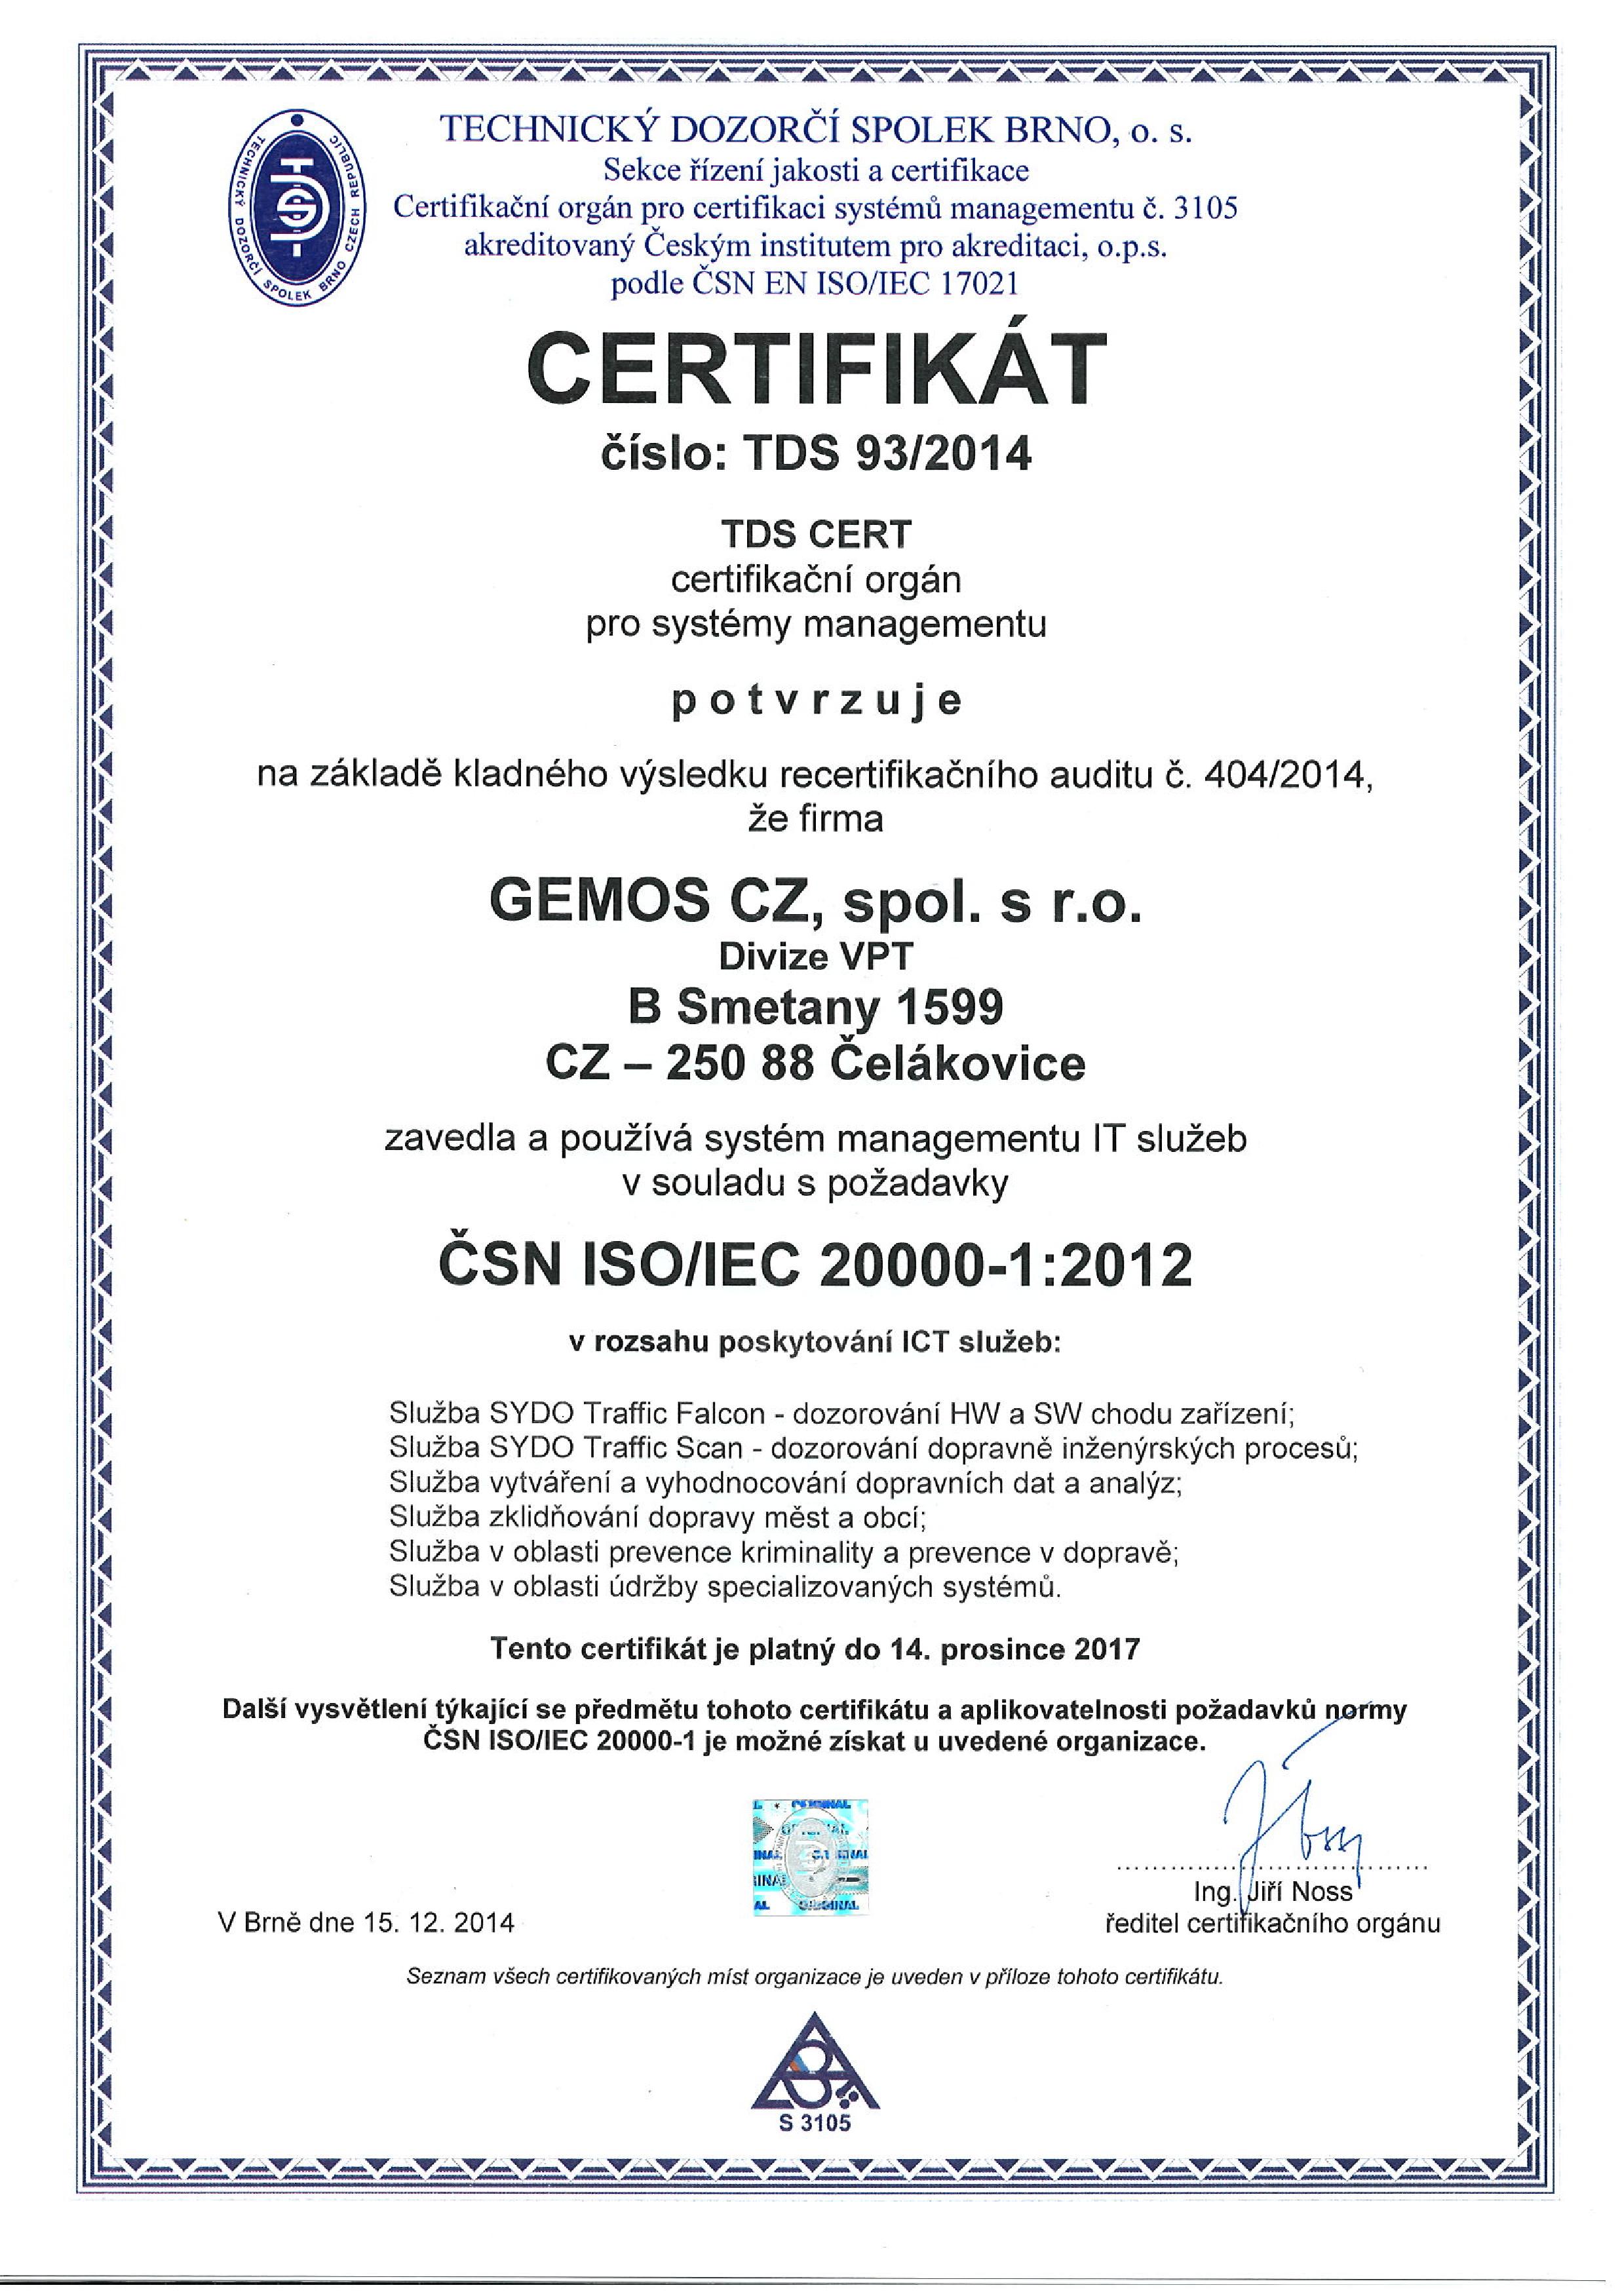 Certifikát ČSN ISO/IEC 20 000-1 udělený společnosti GEMOS CZ